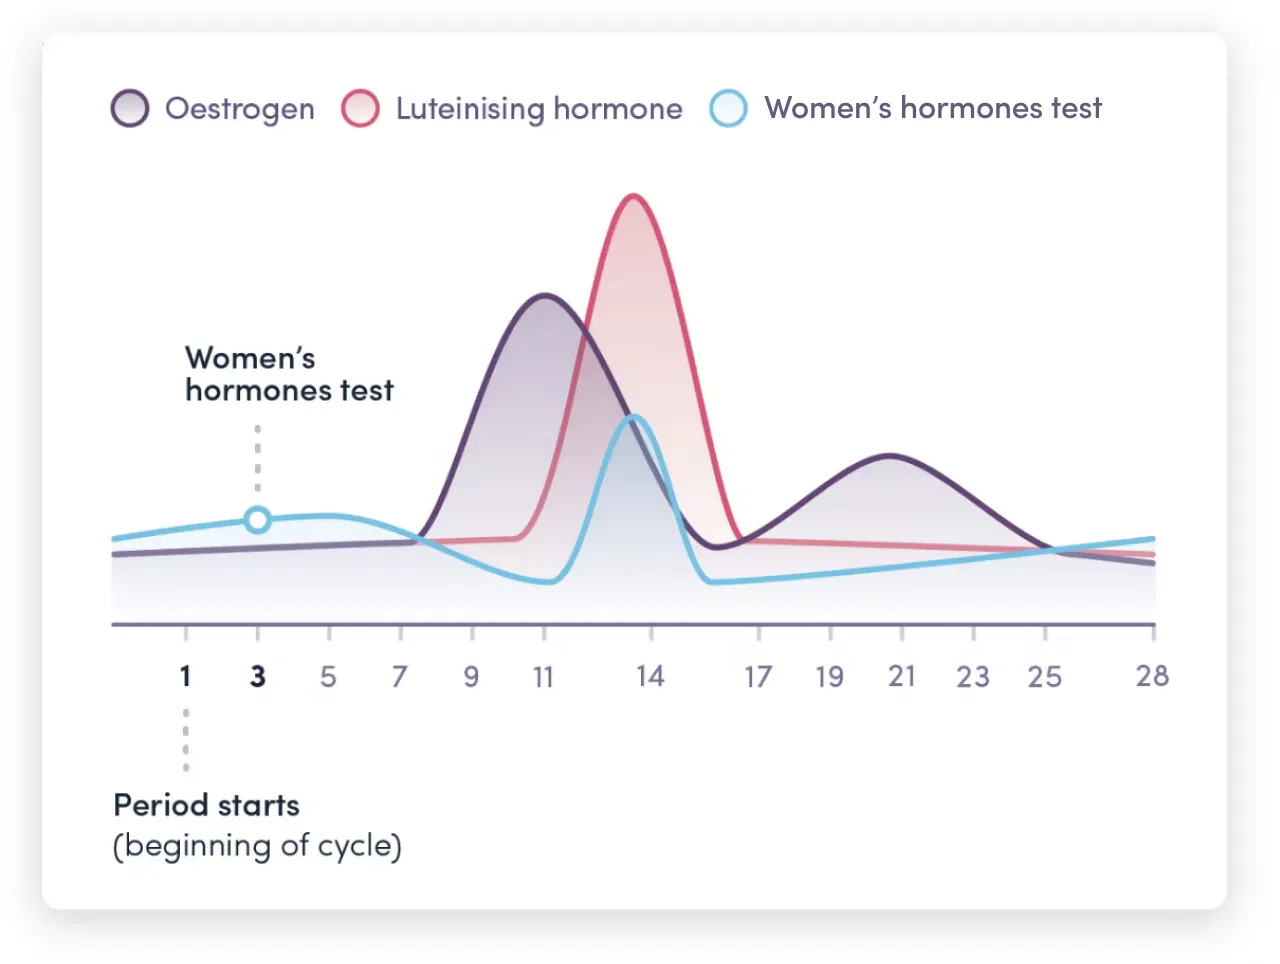 Women's hormones test infographic